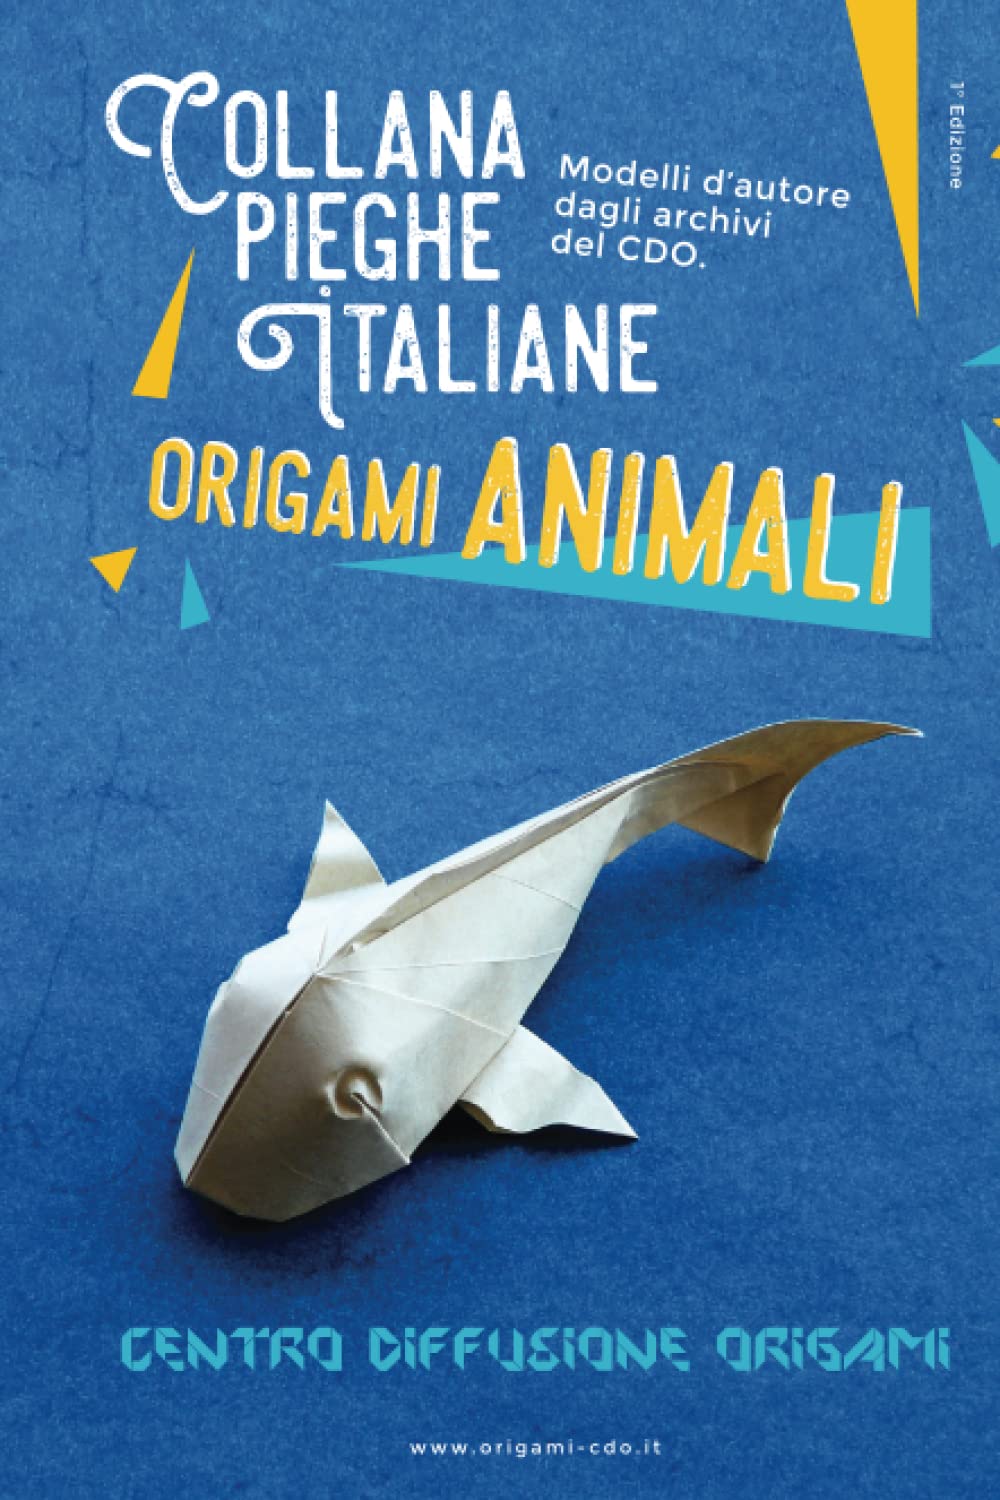 Collana pieghe Italiane - origami ANIMALI : page 116.